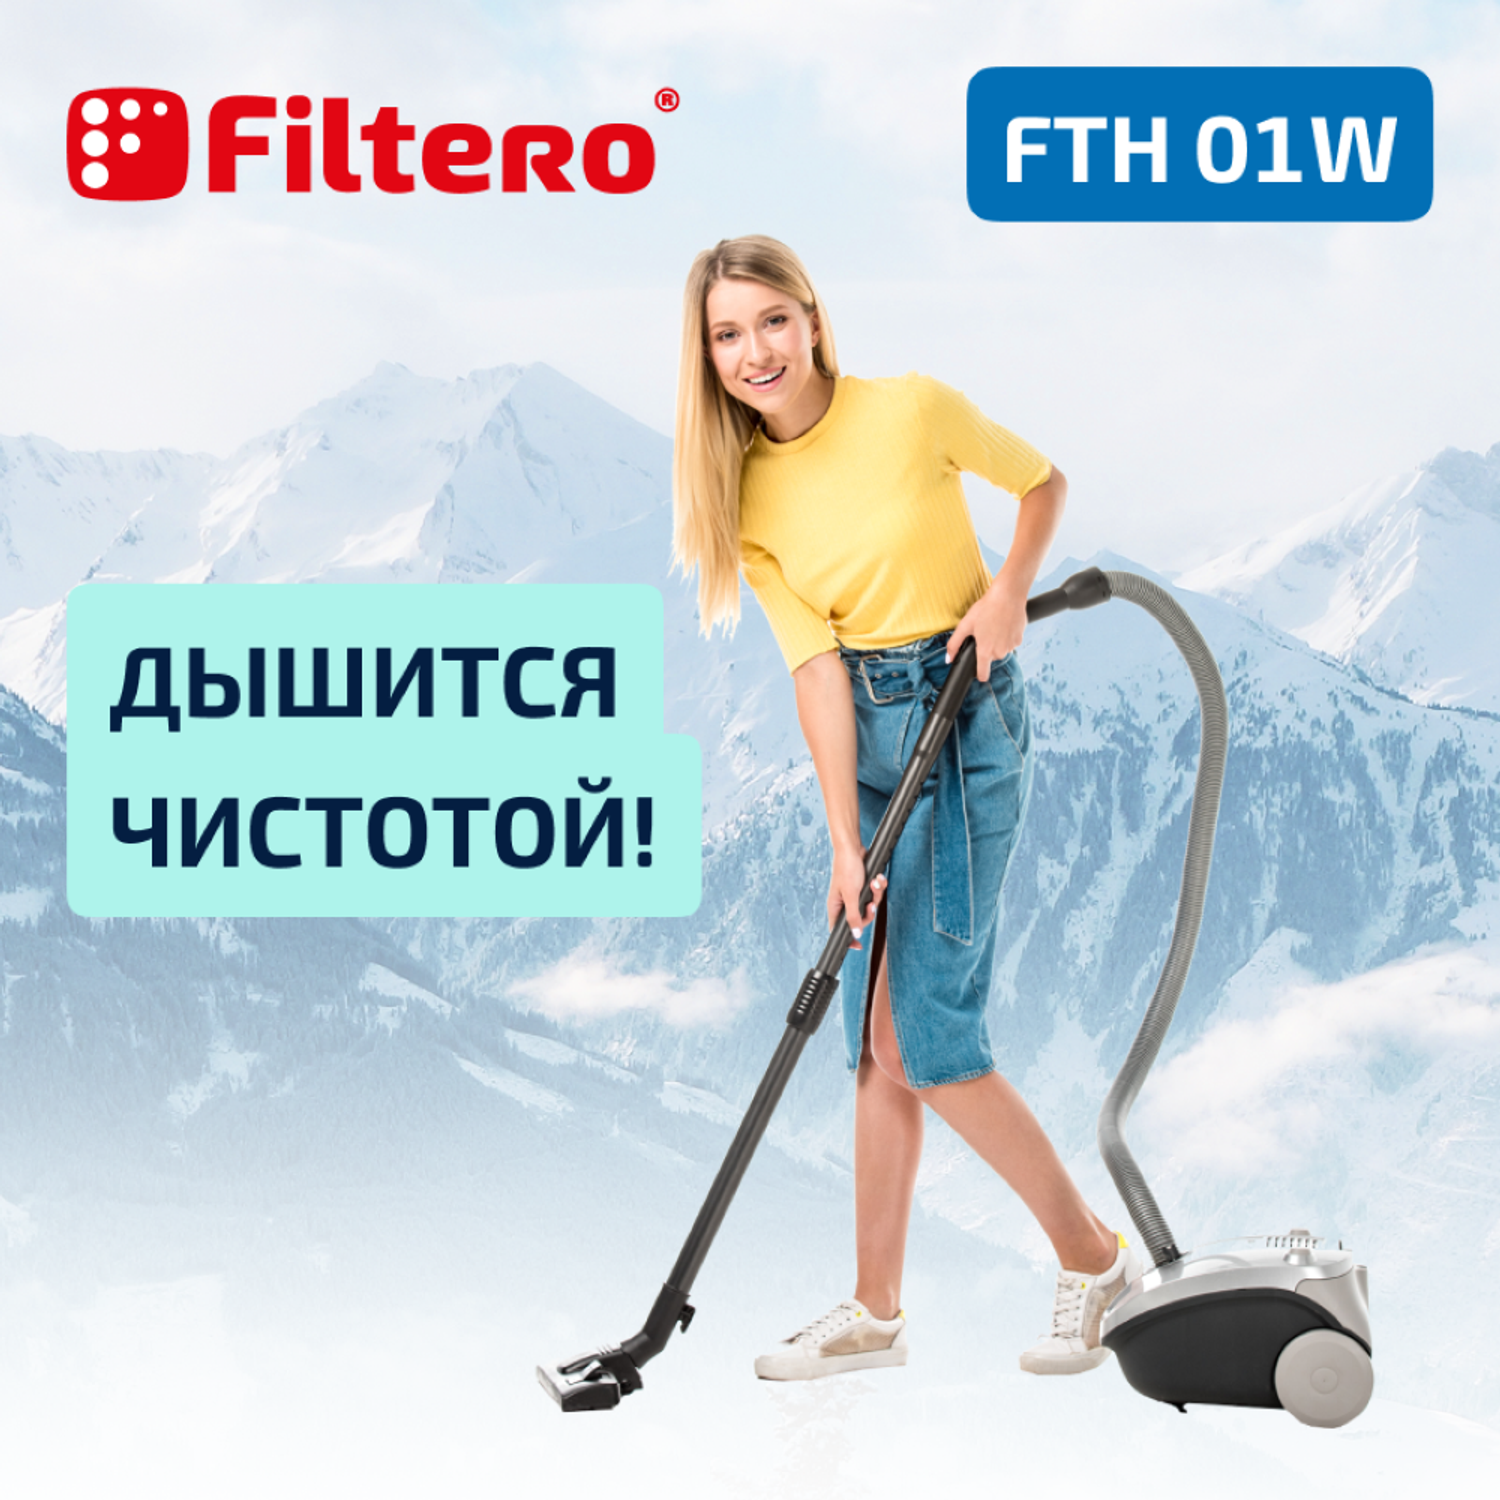 Фильтр HEPA Filtero для пылесосов Electrolux и Philips FTH 01 W Elx моющийся - фото 5